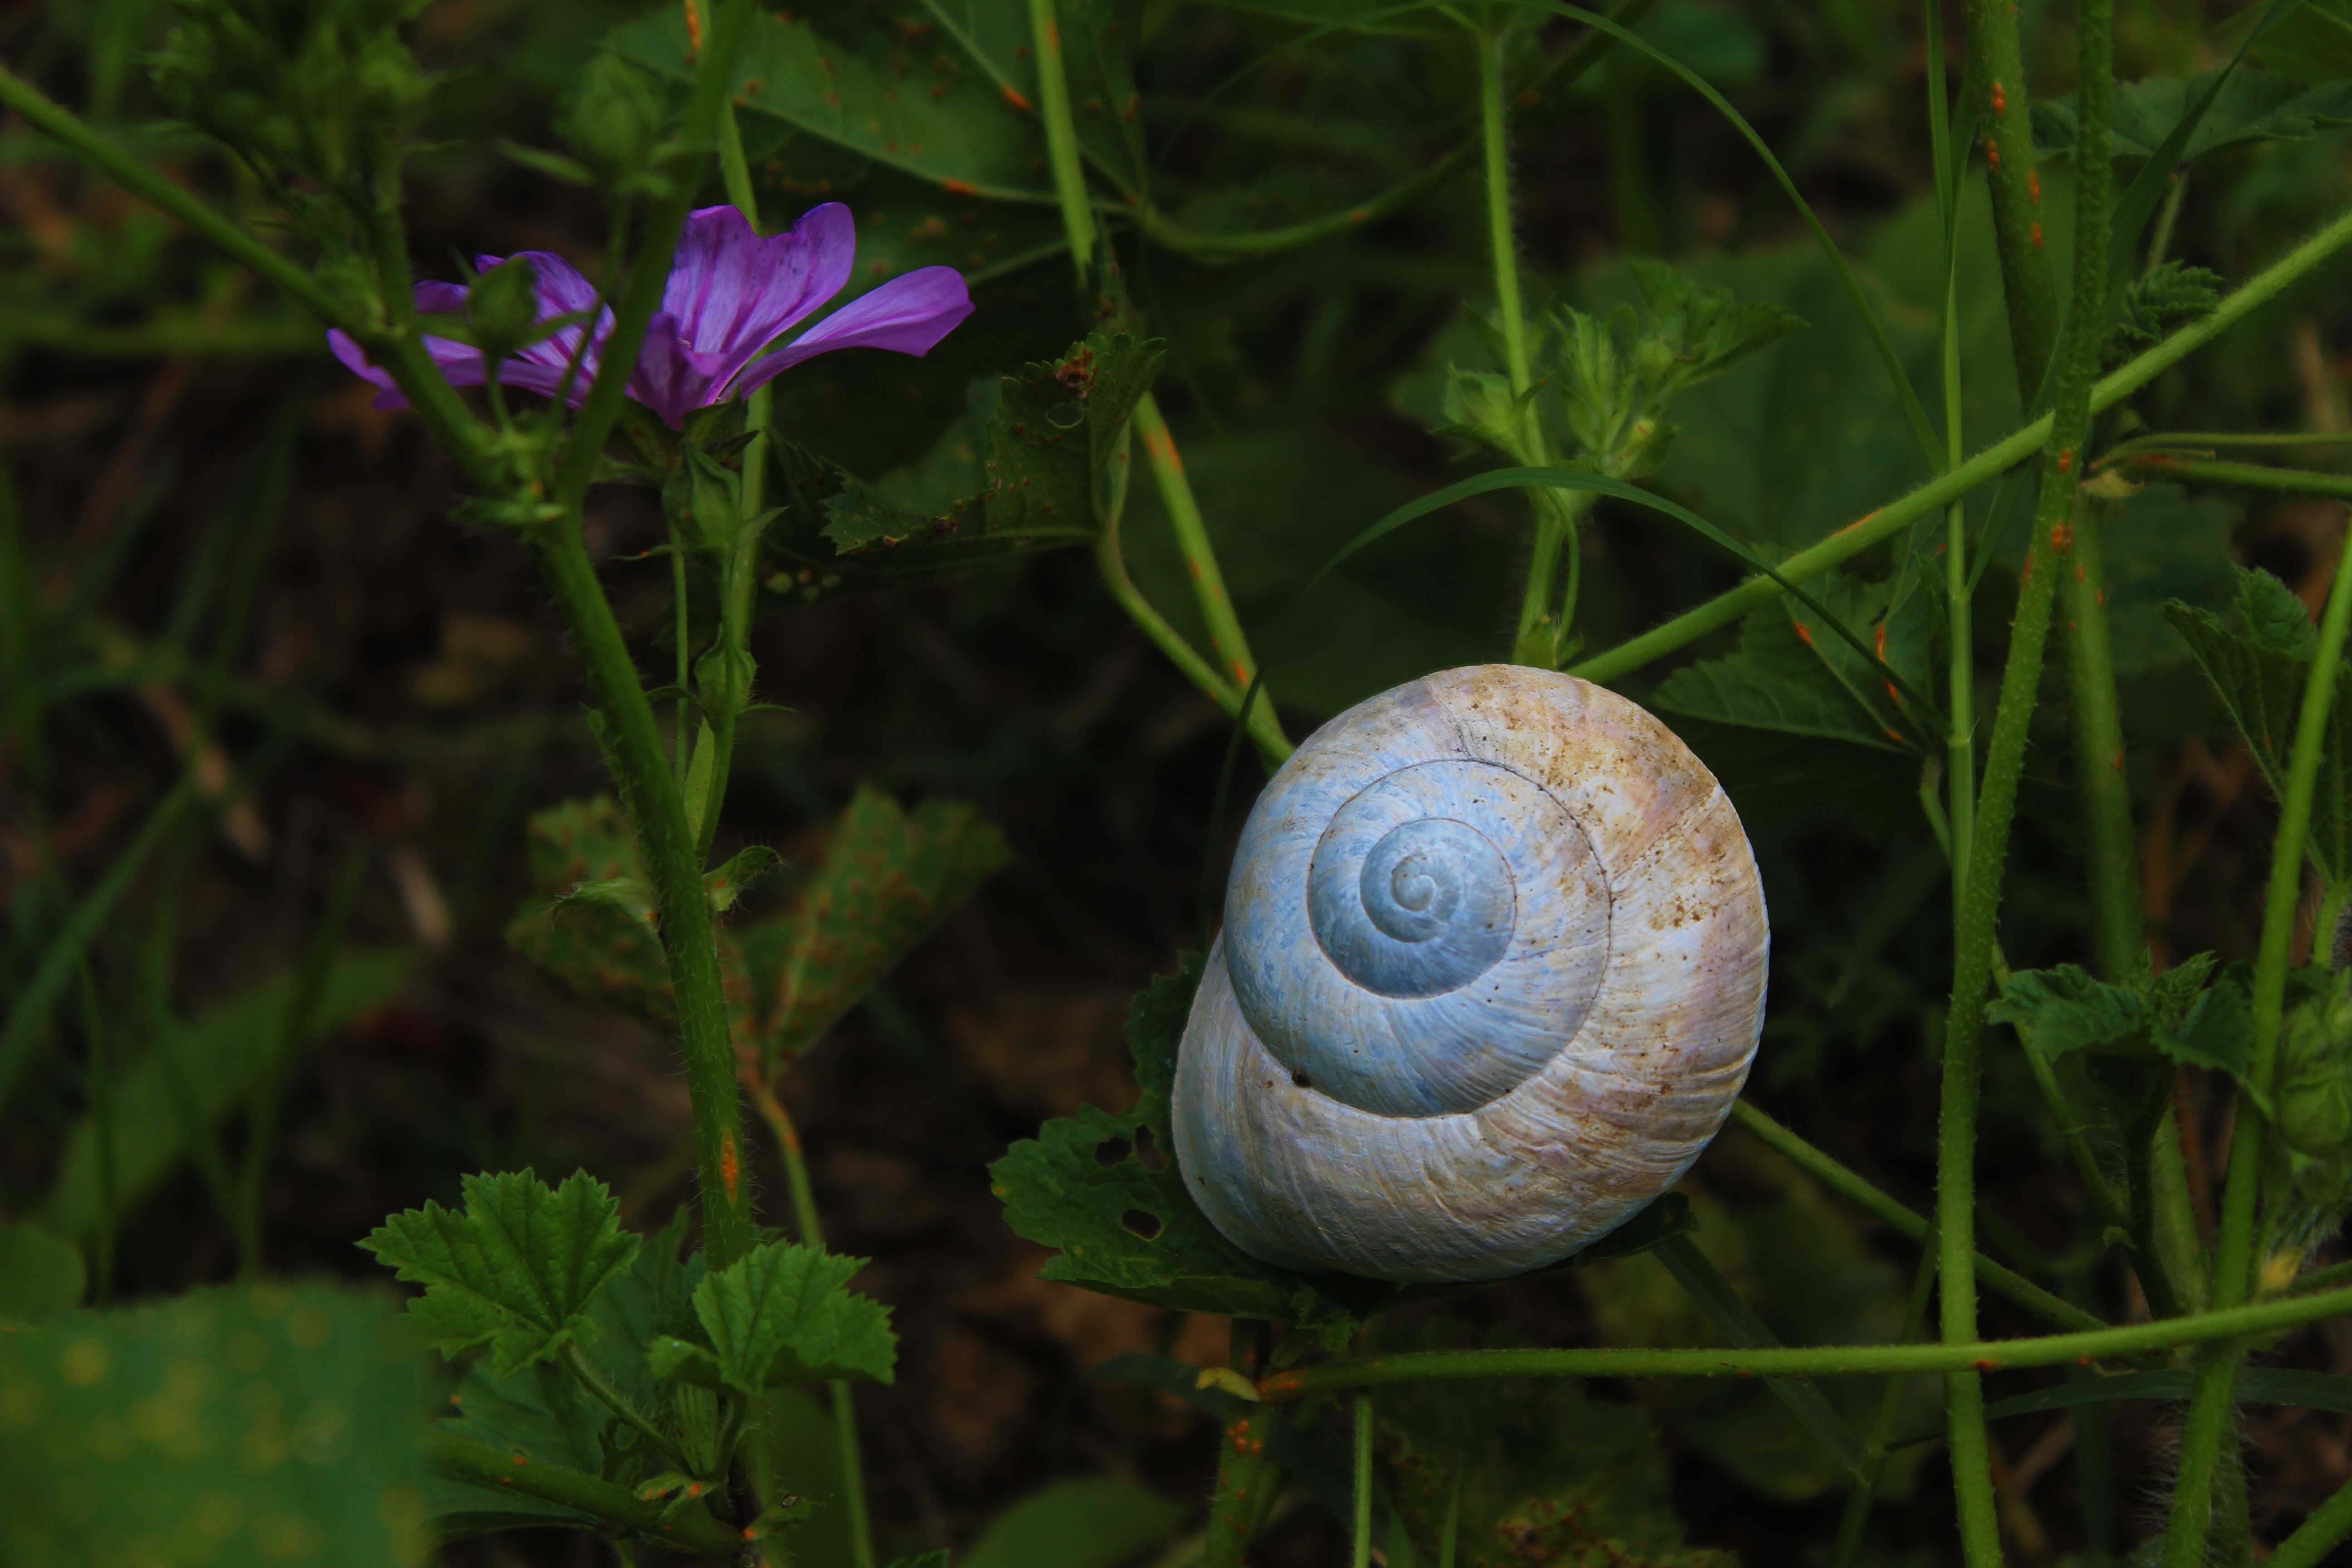 brown snail near purple petal flower